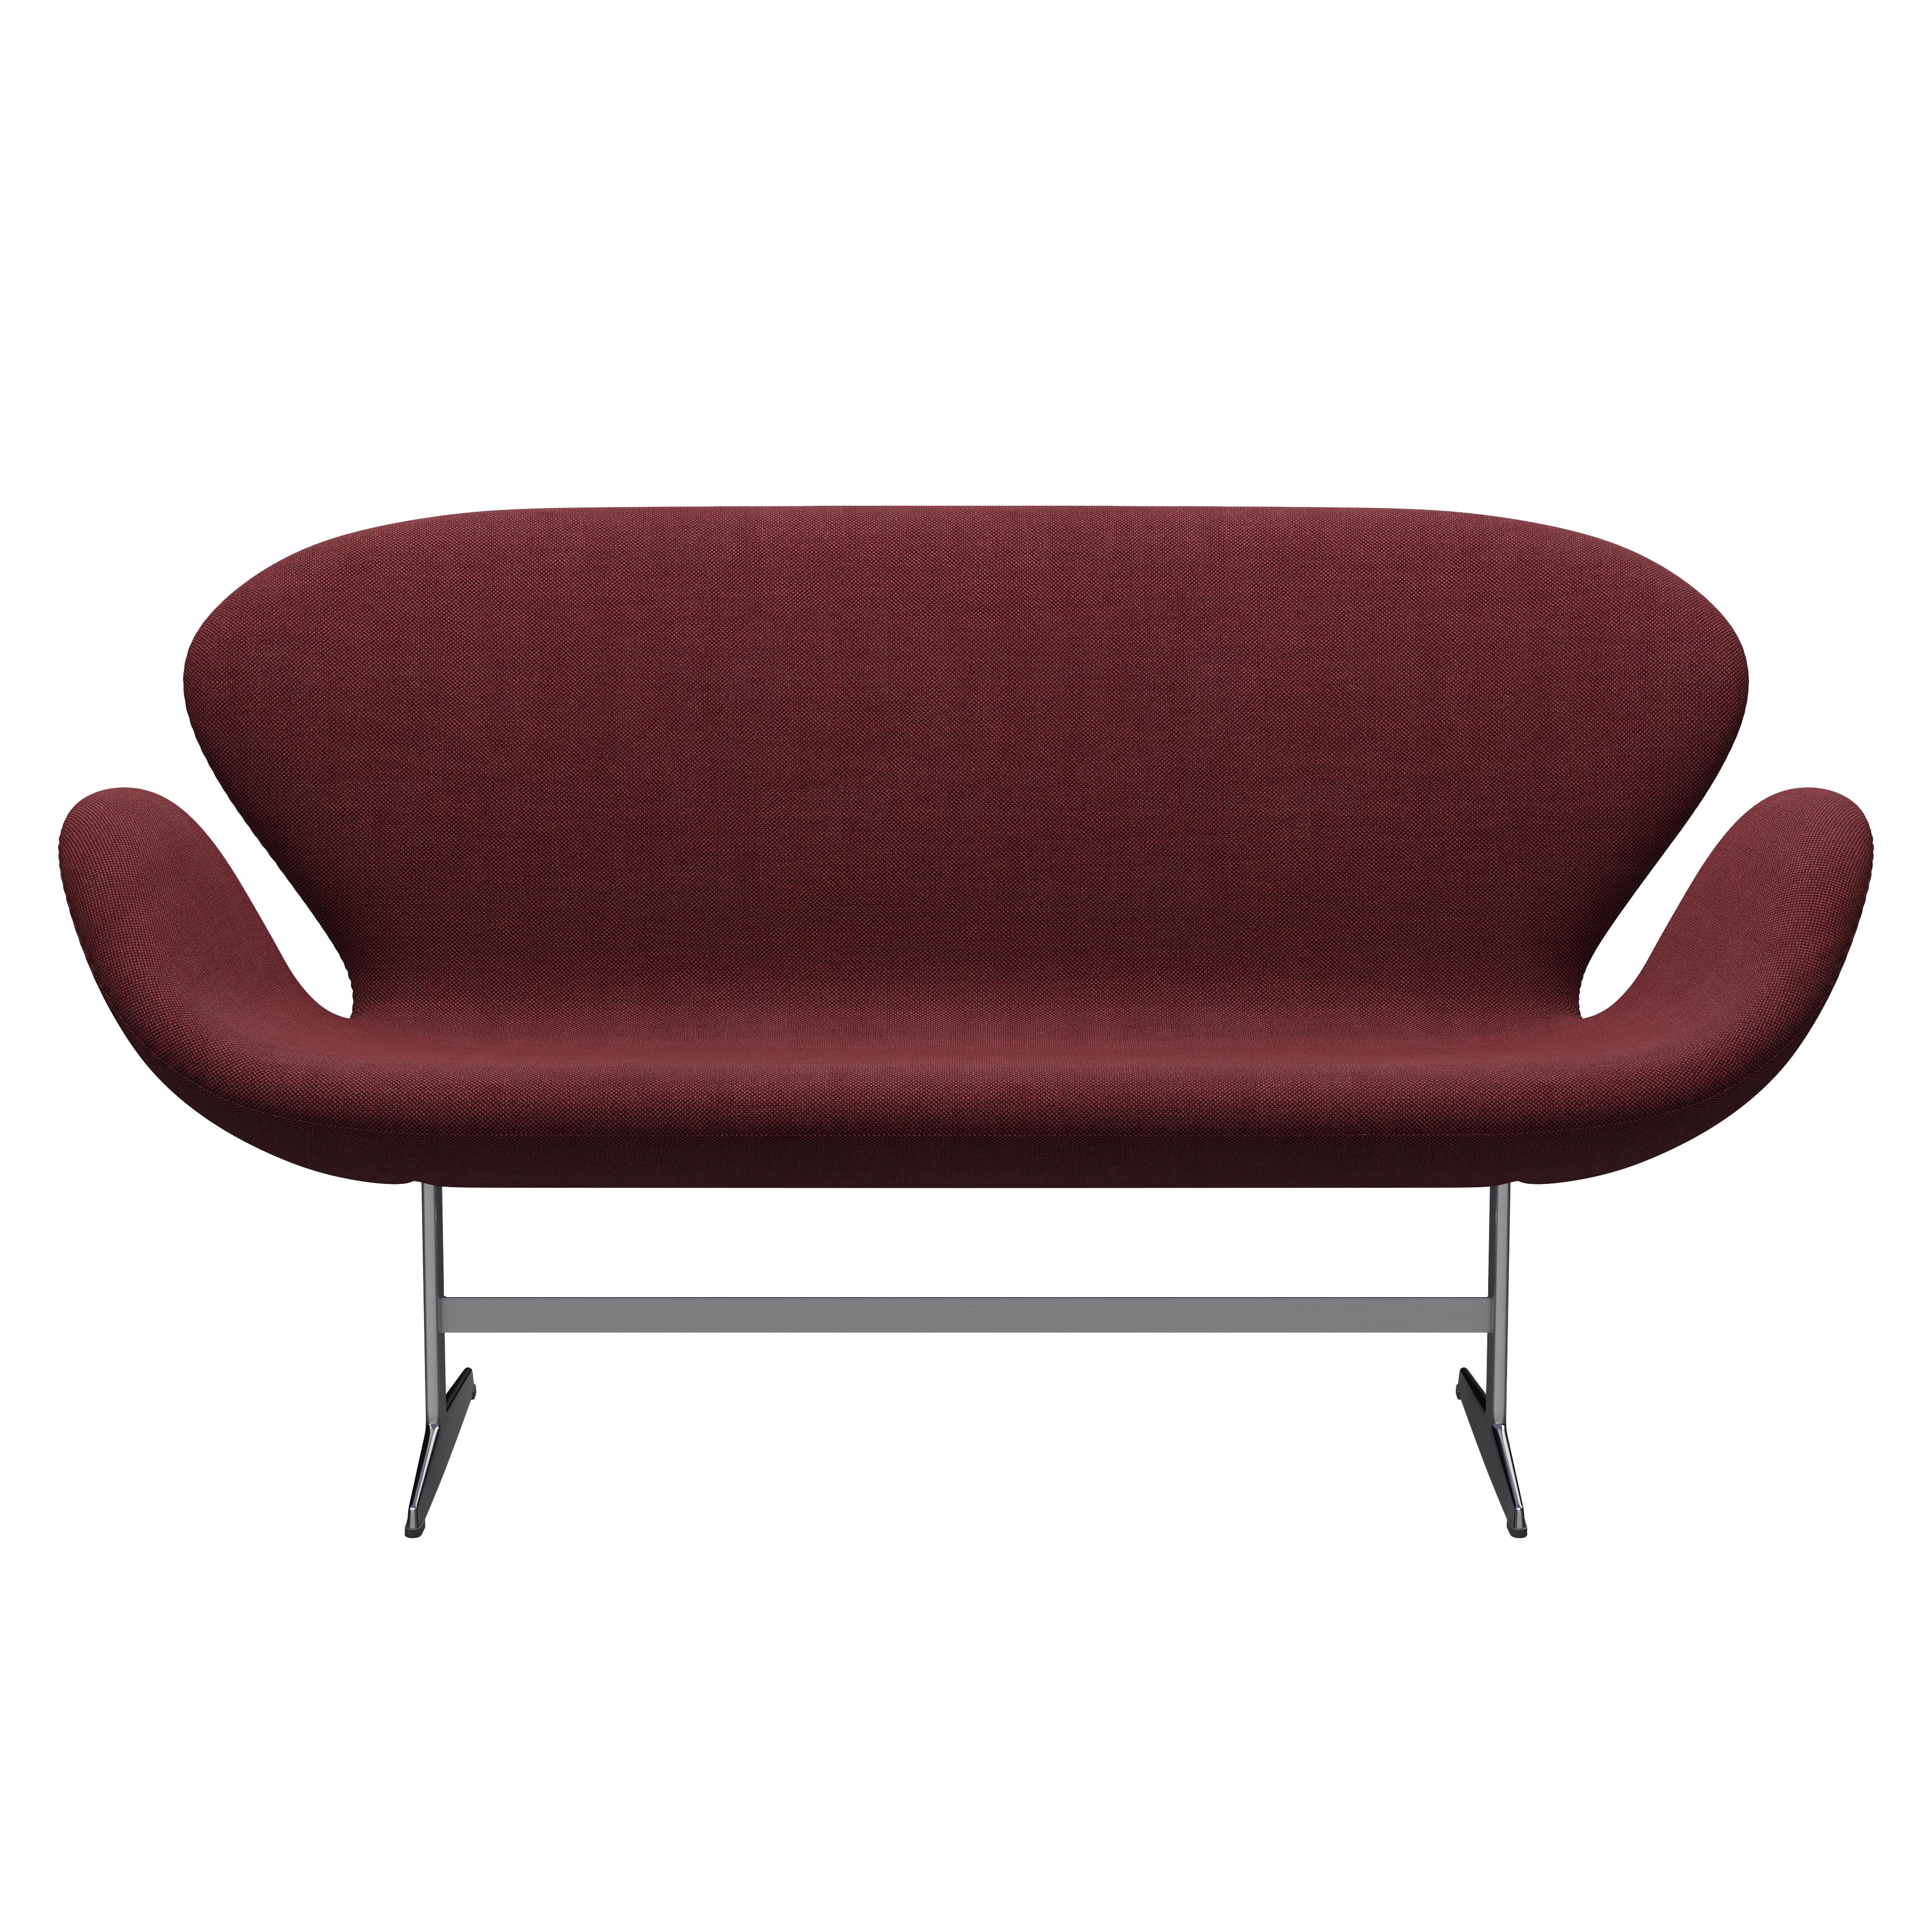 Arne Jacobsen 'Swan' Sofa for Fritz Hansen in Fabric Upholstery (Cat. 2) For Sale 3